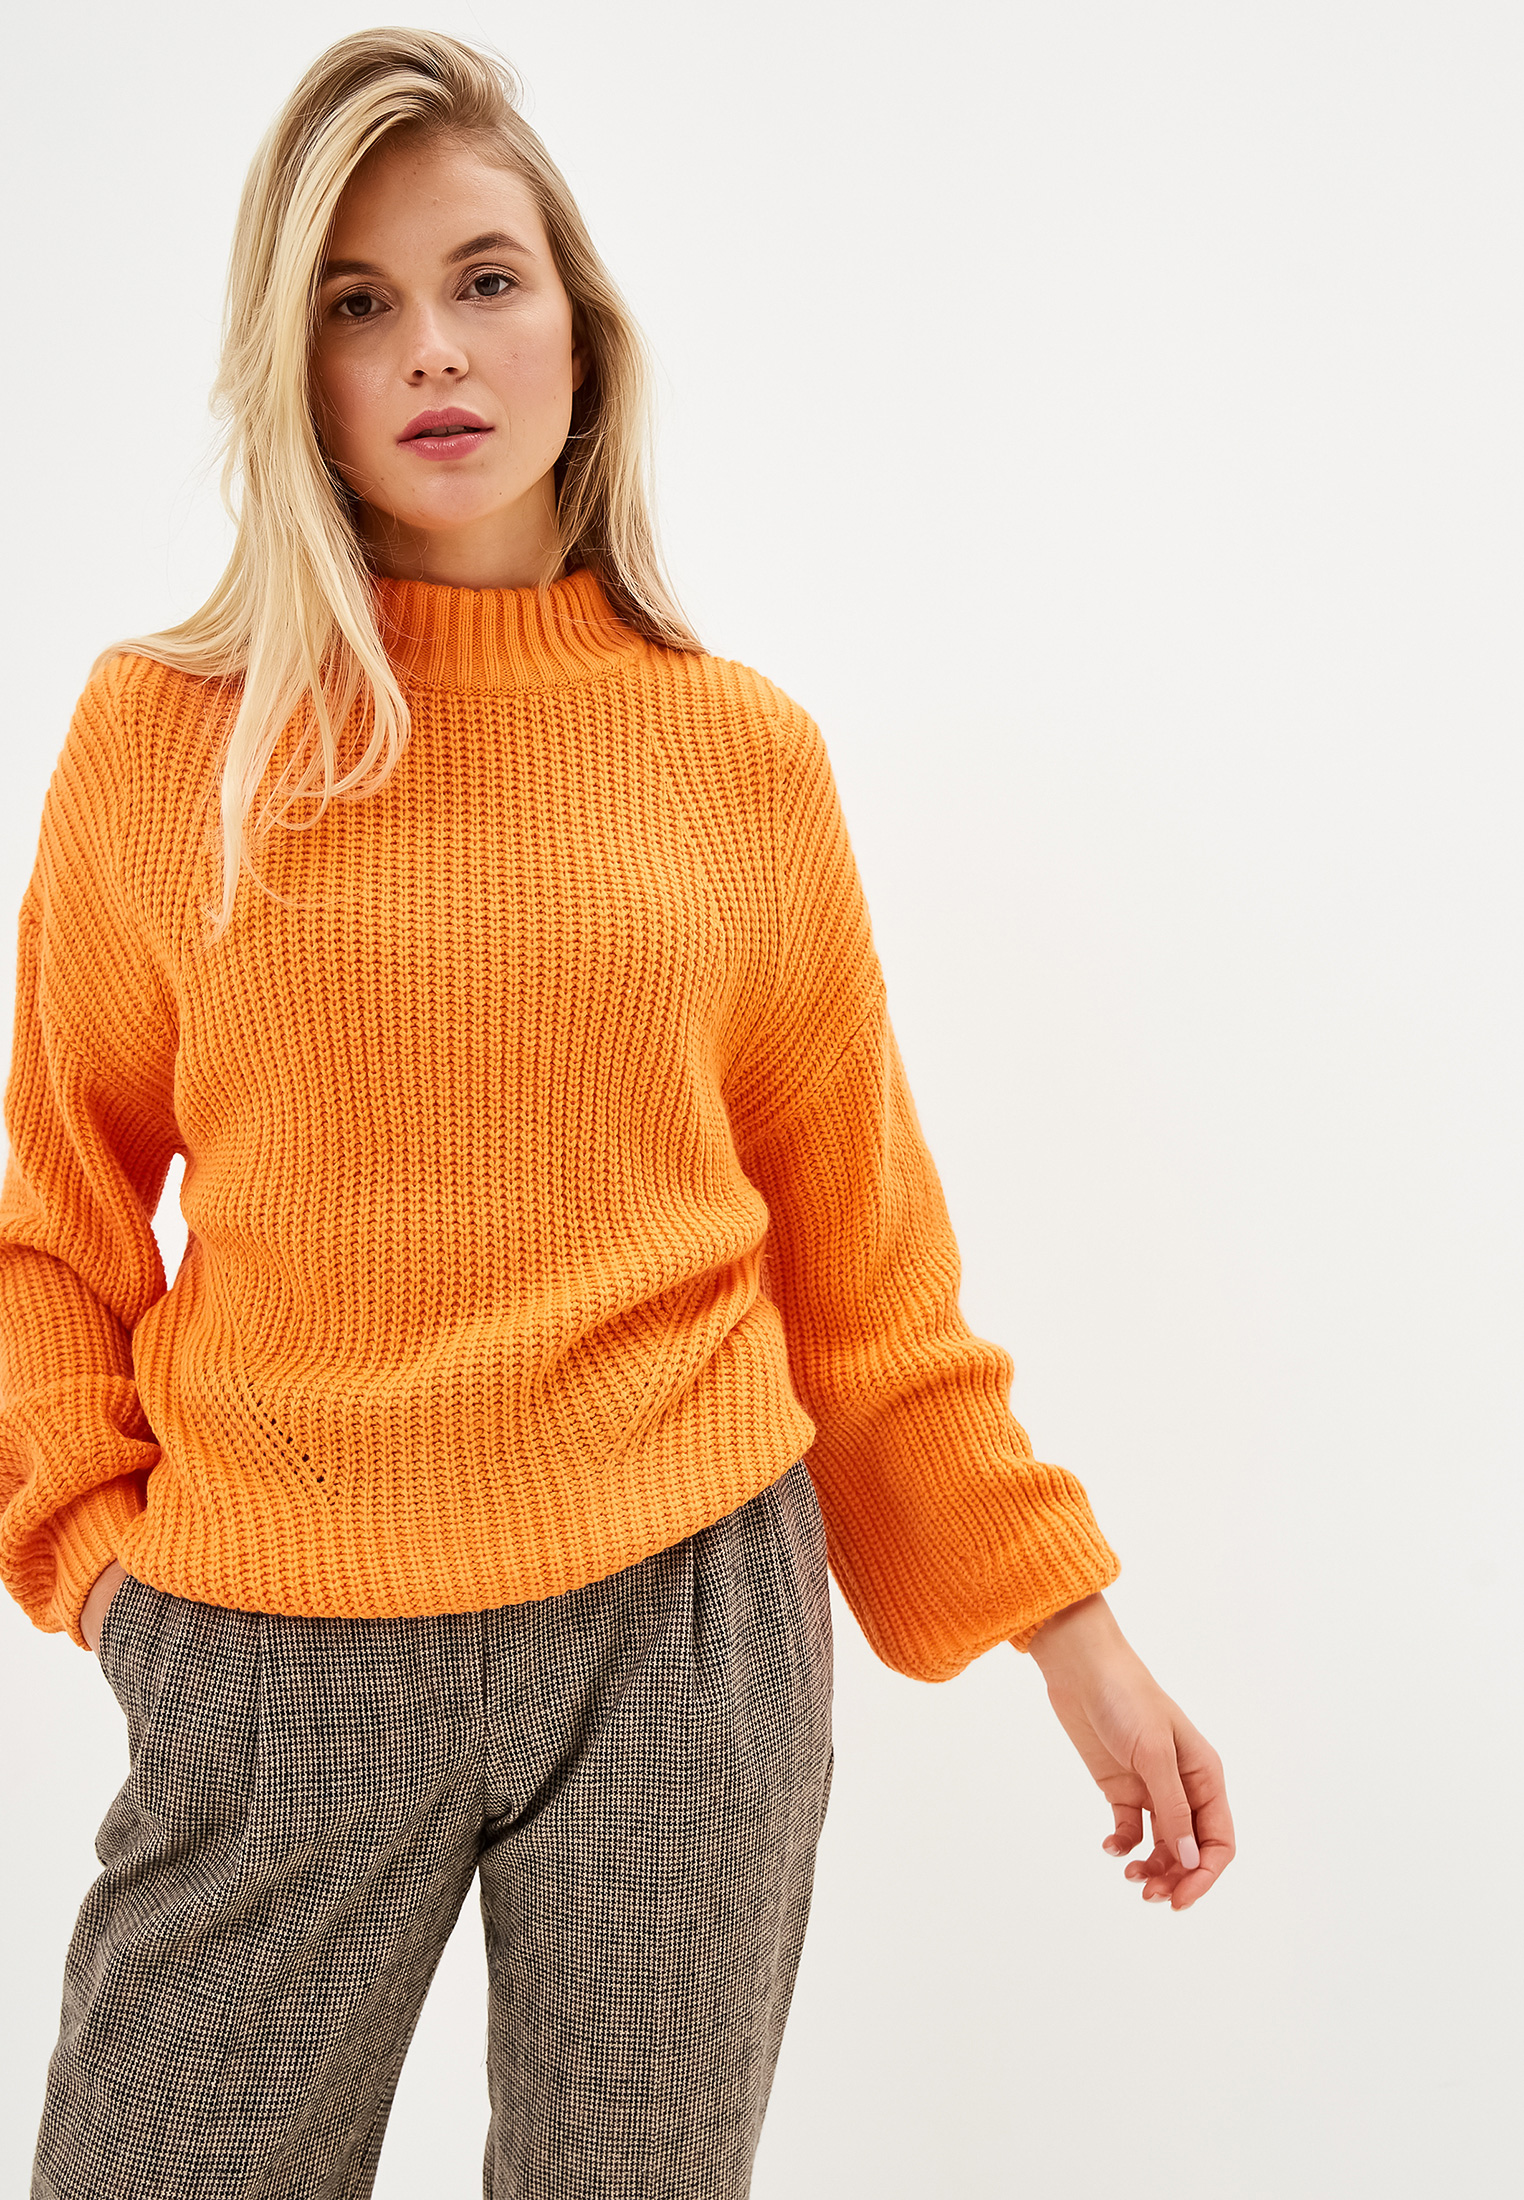 Где купить джемперы. Оранжевый пуловер Верена. Оранжевый свитер женский. Оранжевый джемпер женский. Оранжевый пуловер женский.